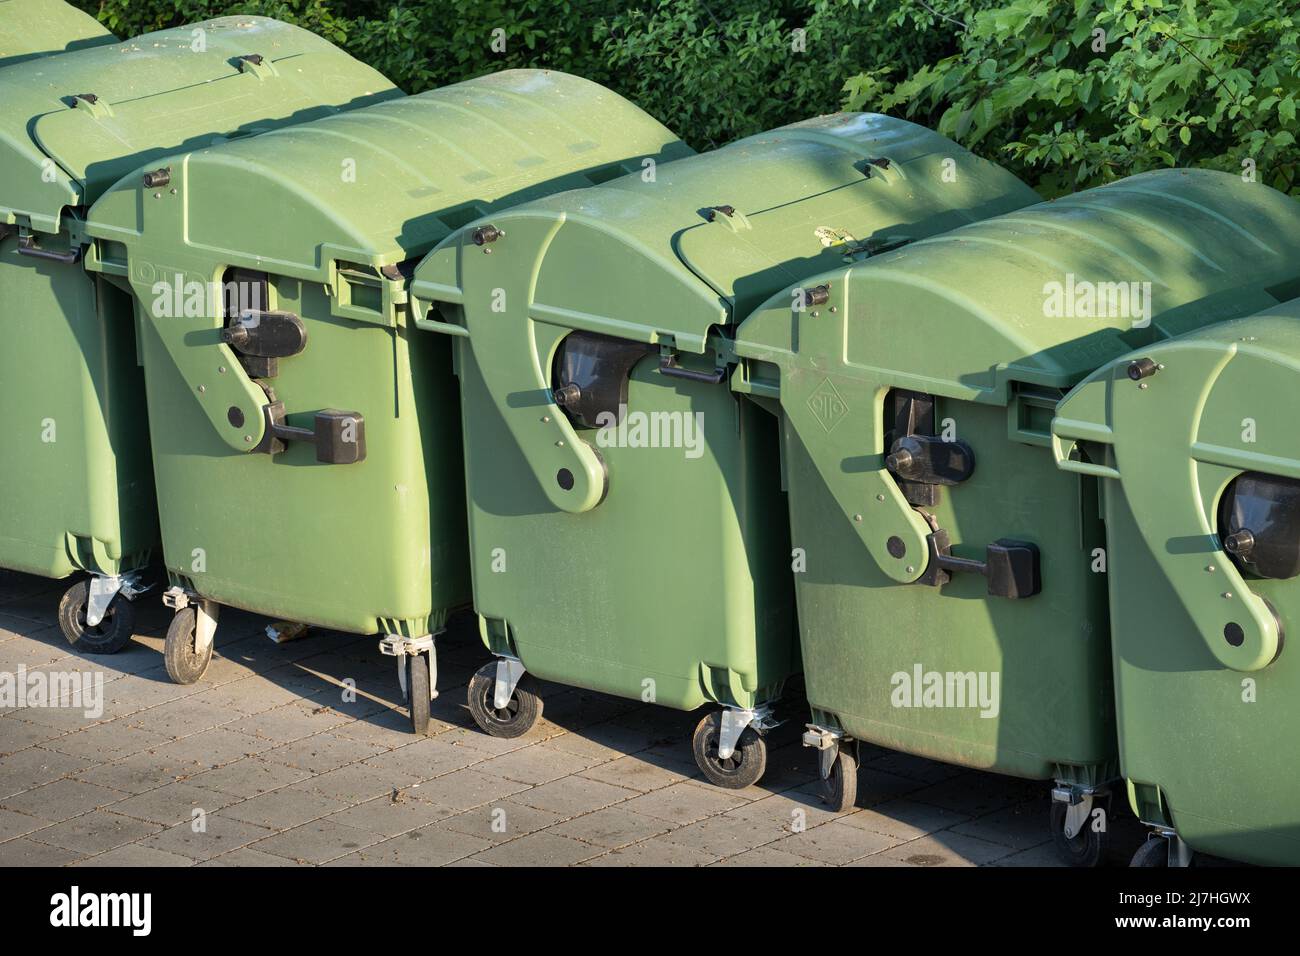 Die Abfallbehälter, in denen der Abfall gesammelt wurde, sind zur Entnahme oder Entleerung bereit. Stockfoto